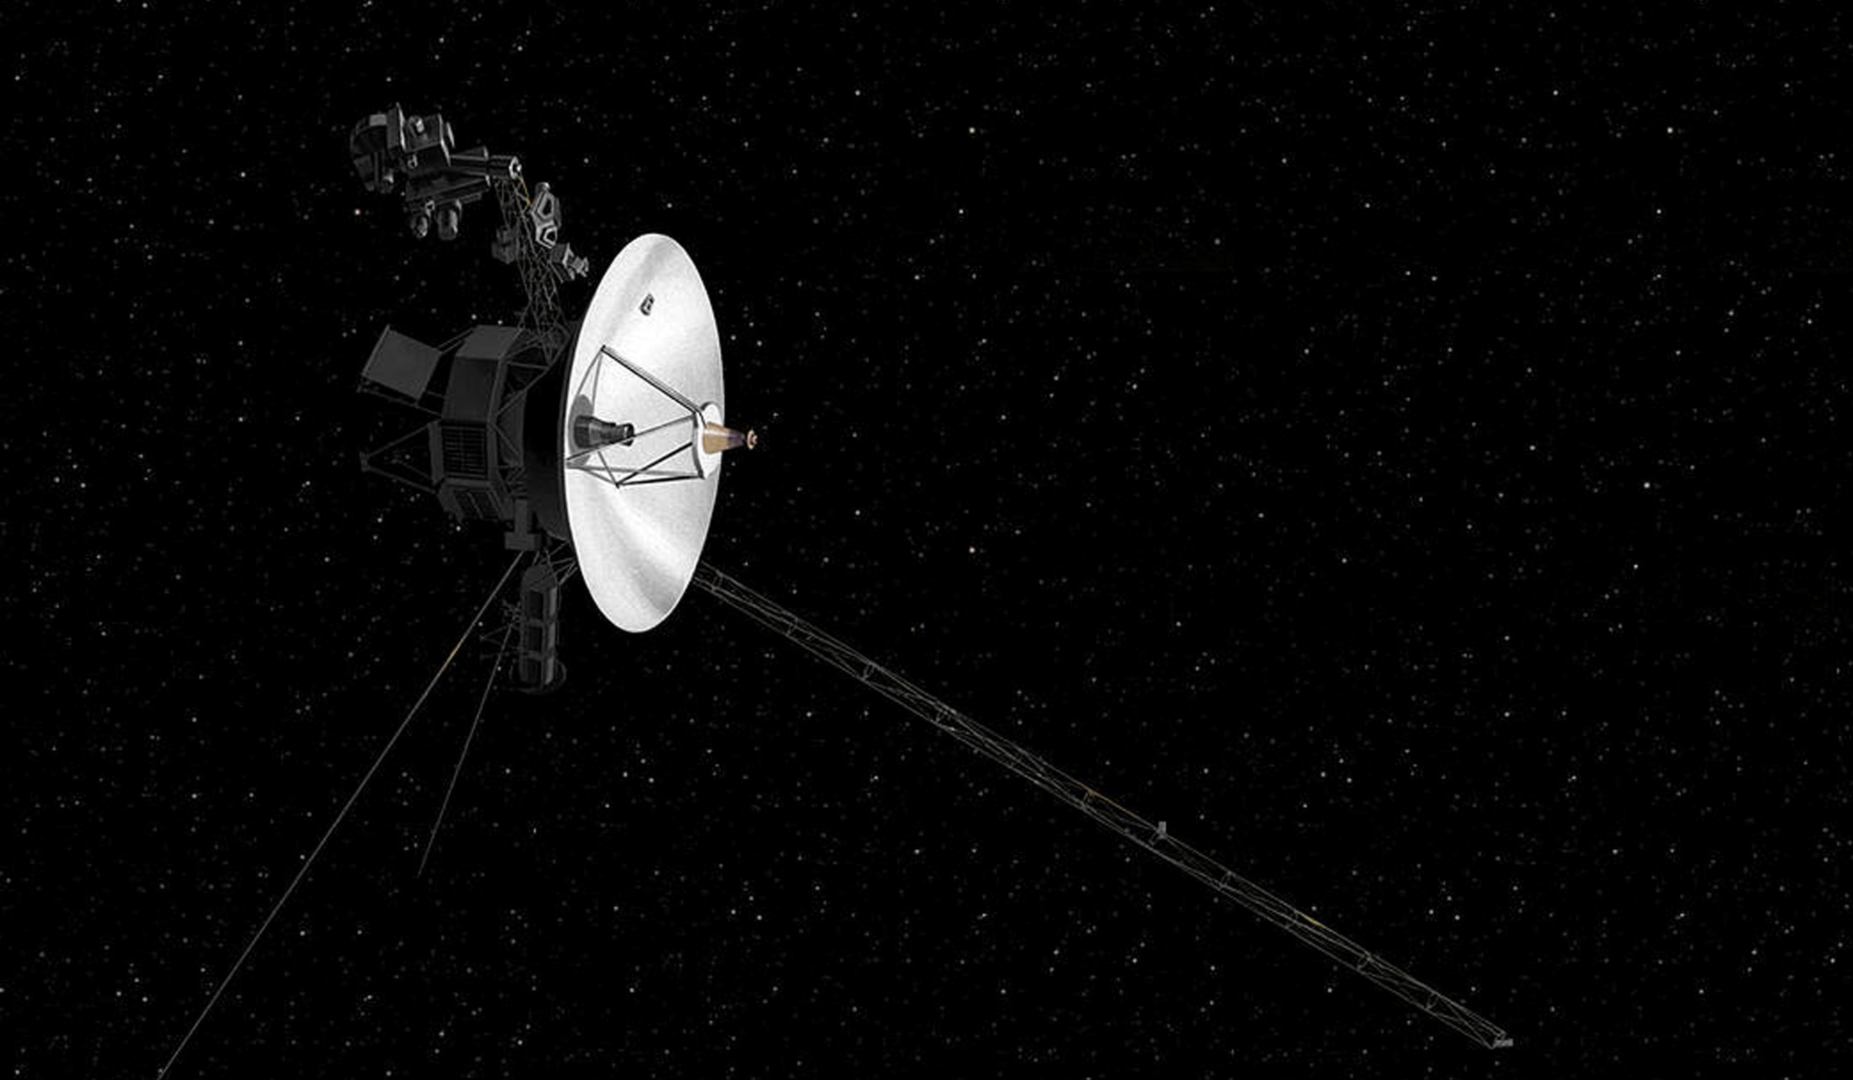 La misión New Horizons de la NASA sobrevolará el cuerpo celeste más lejano jamás explorado